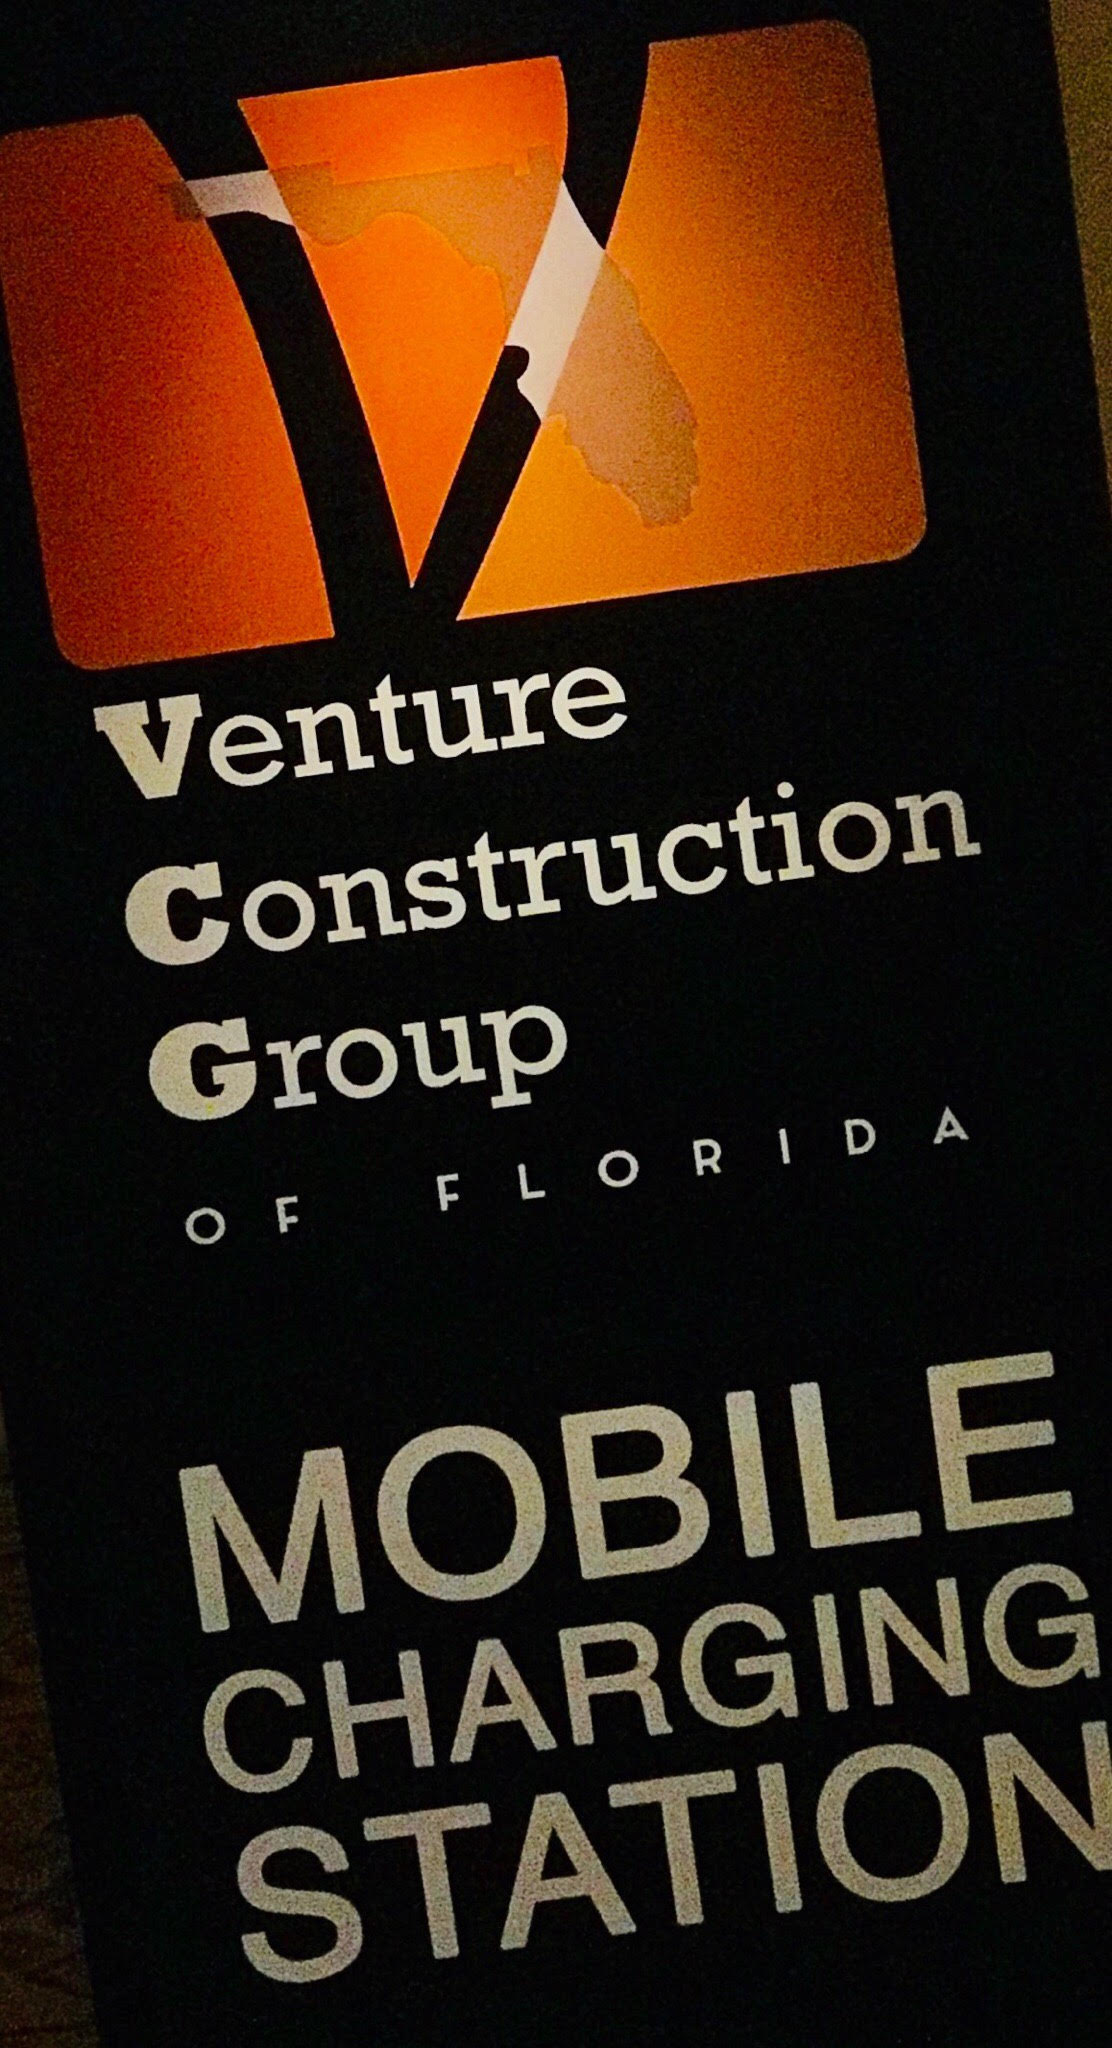 Venture Construction Group of Florida: WindStorm Insurance Conference Mobile Charging Station Sponsor